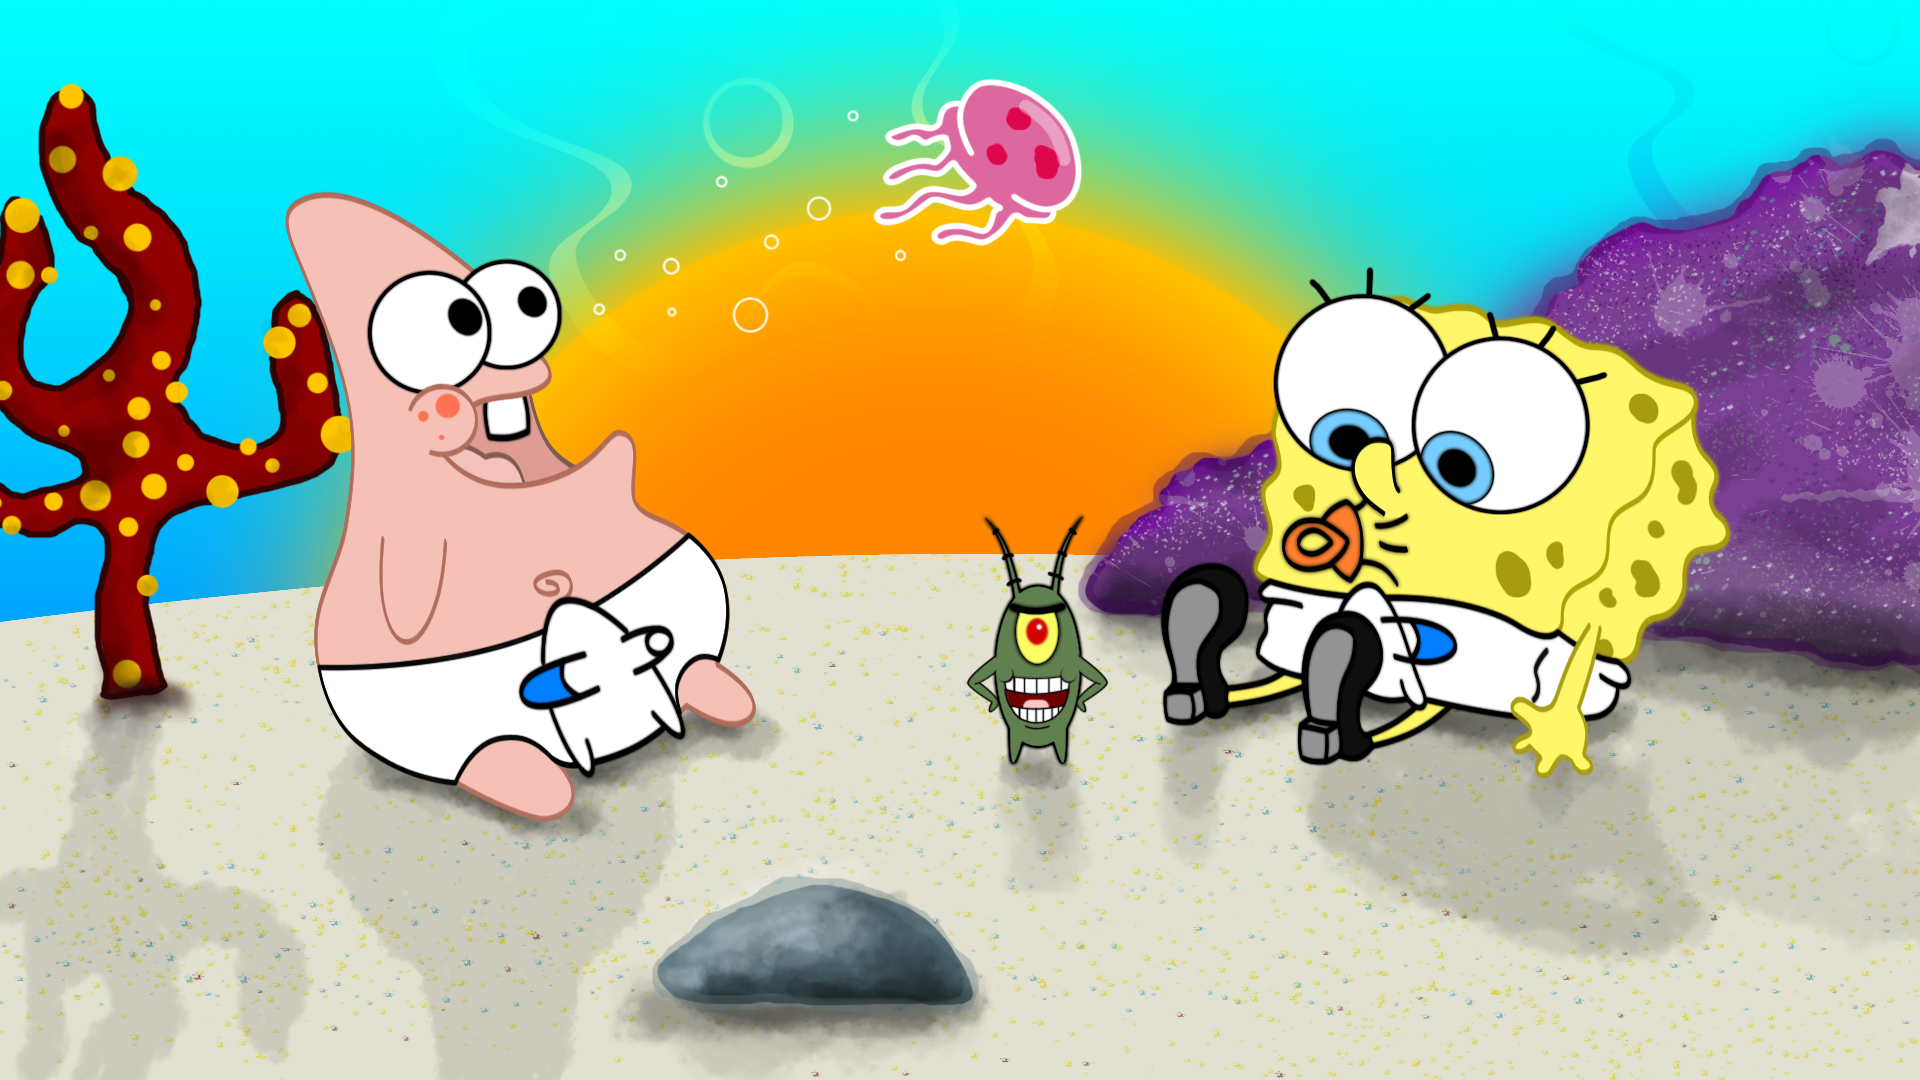 Spongebob Desktop Backgrounds Free Download Pixelstalk Net